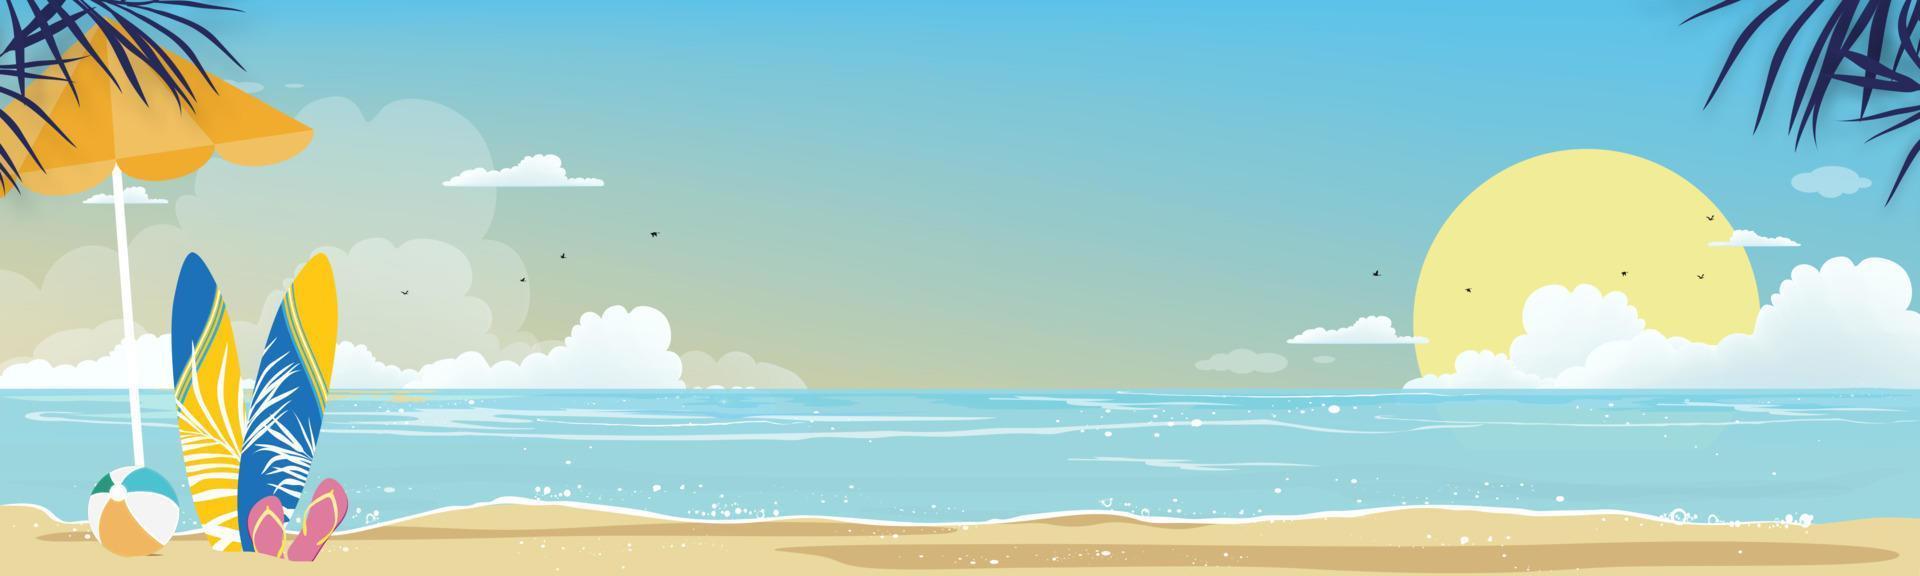 zeegezicht van blauwe oceaan en kokospalm op eiland, horizontaal zeestrand, zand met blauwe lucht en pluizige wolk, vectorillustratie prachtige natuur van landschap aan zee voor zomervakantie achtergrond vector